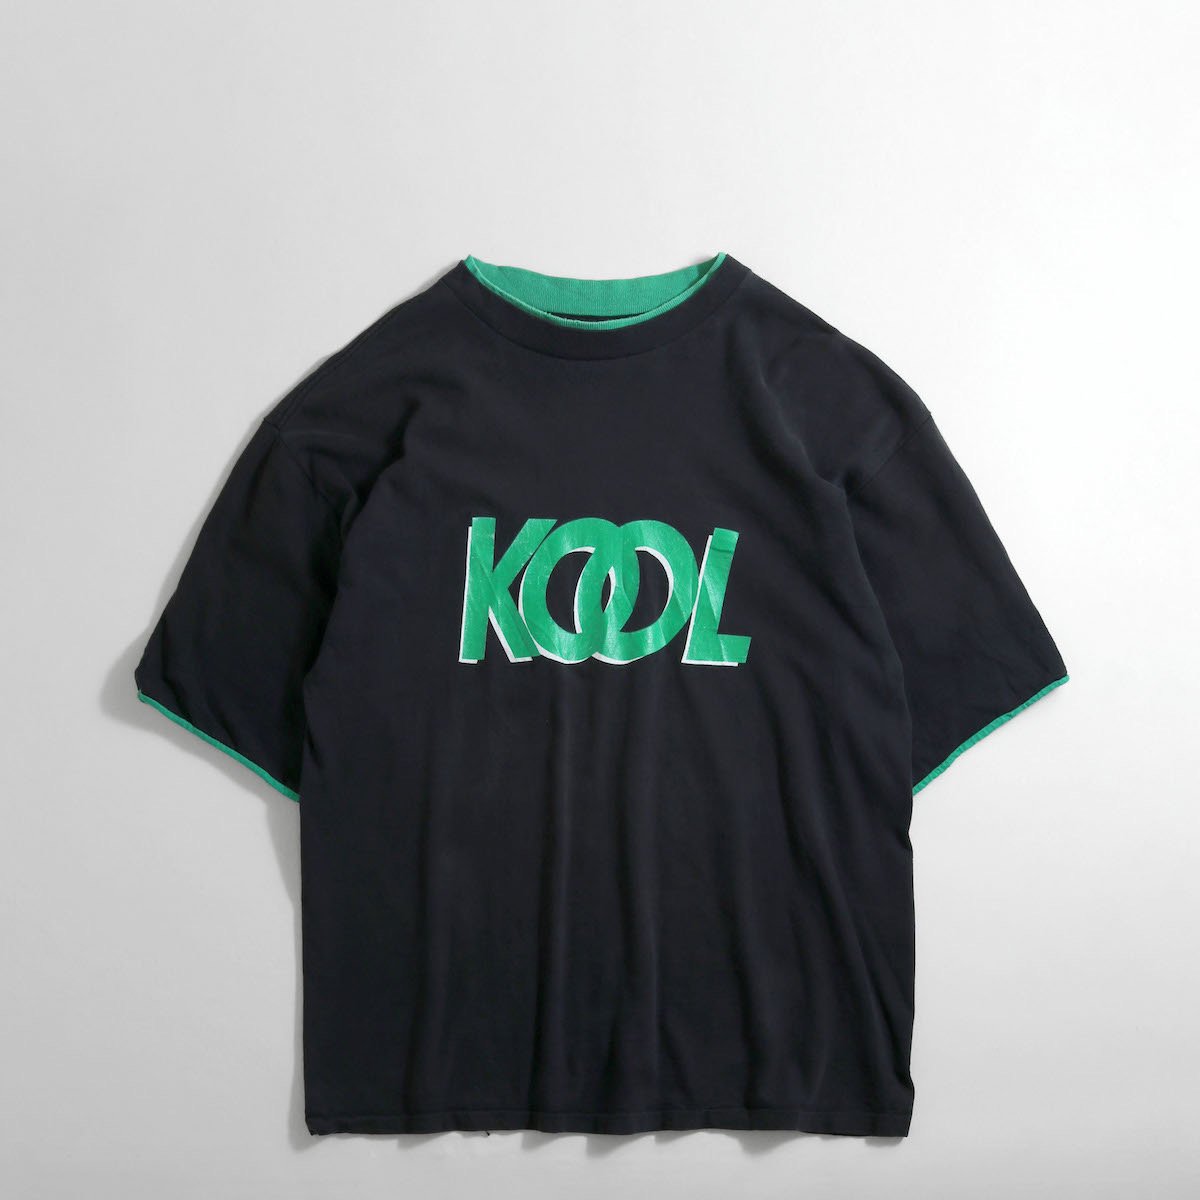 レディース] 1990s USA製 KOOL ロゴTシャツ レイヤード風 ブラック